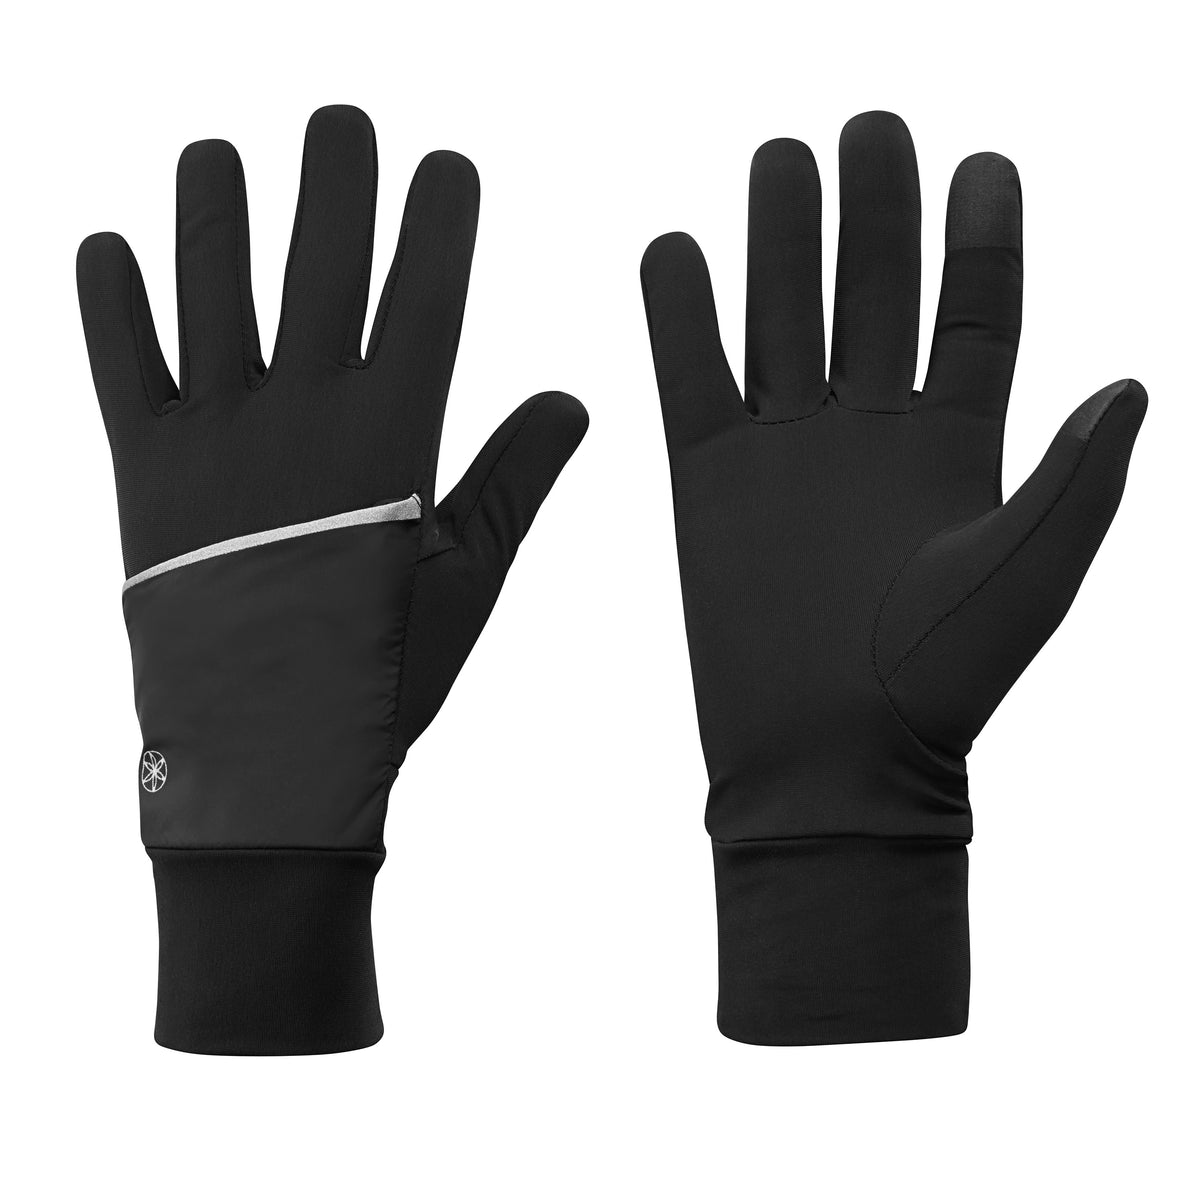 Women's Lightweight Convertible Running Gloves